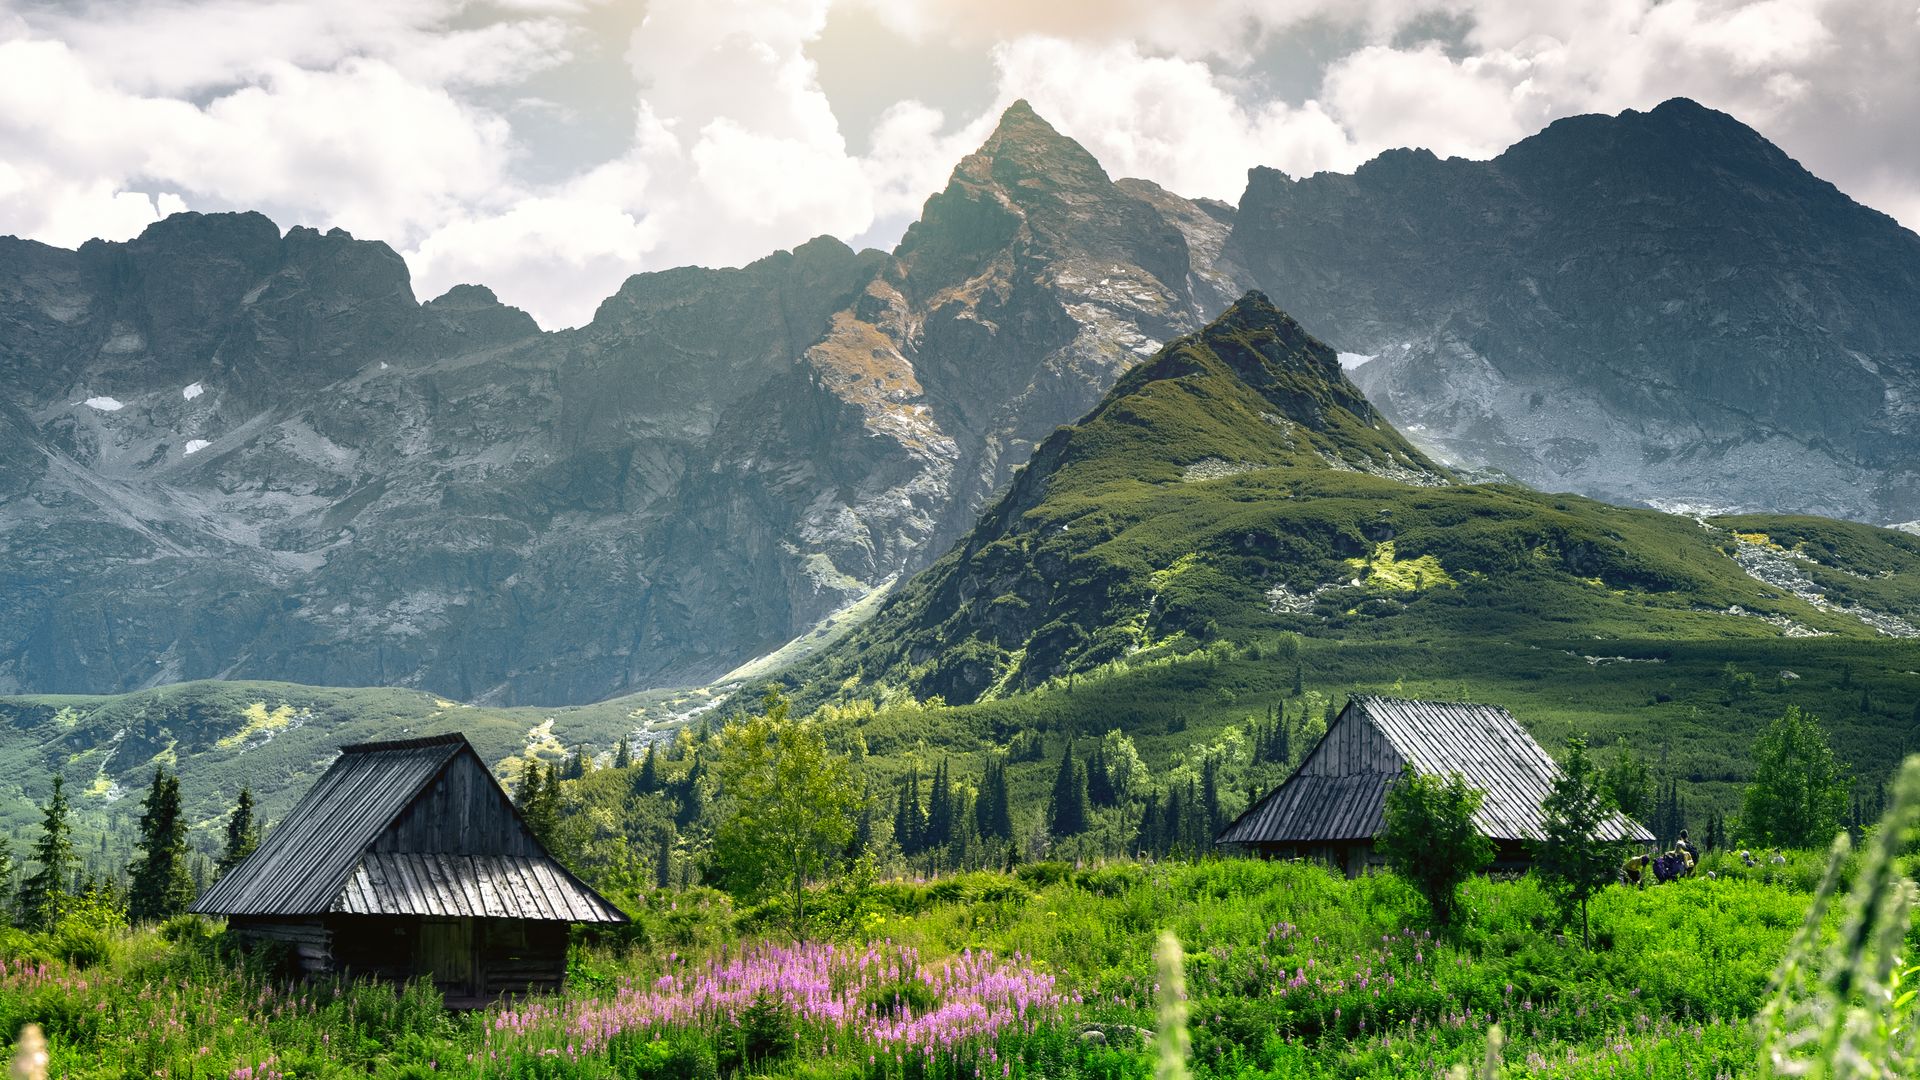 Gasienicowa Valley, Tatra Mountains, Poland